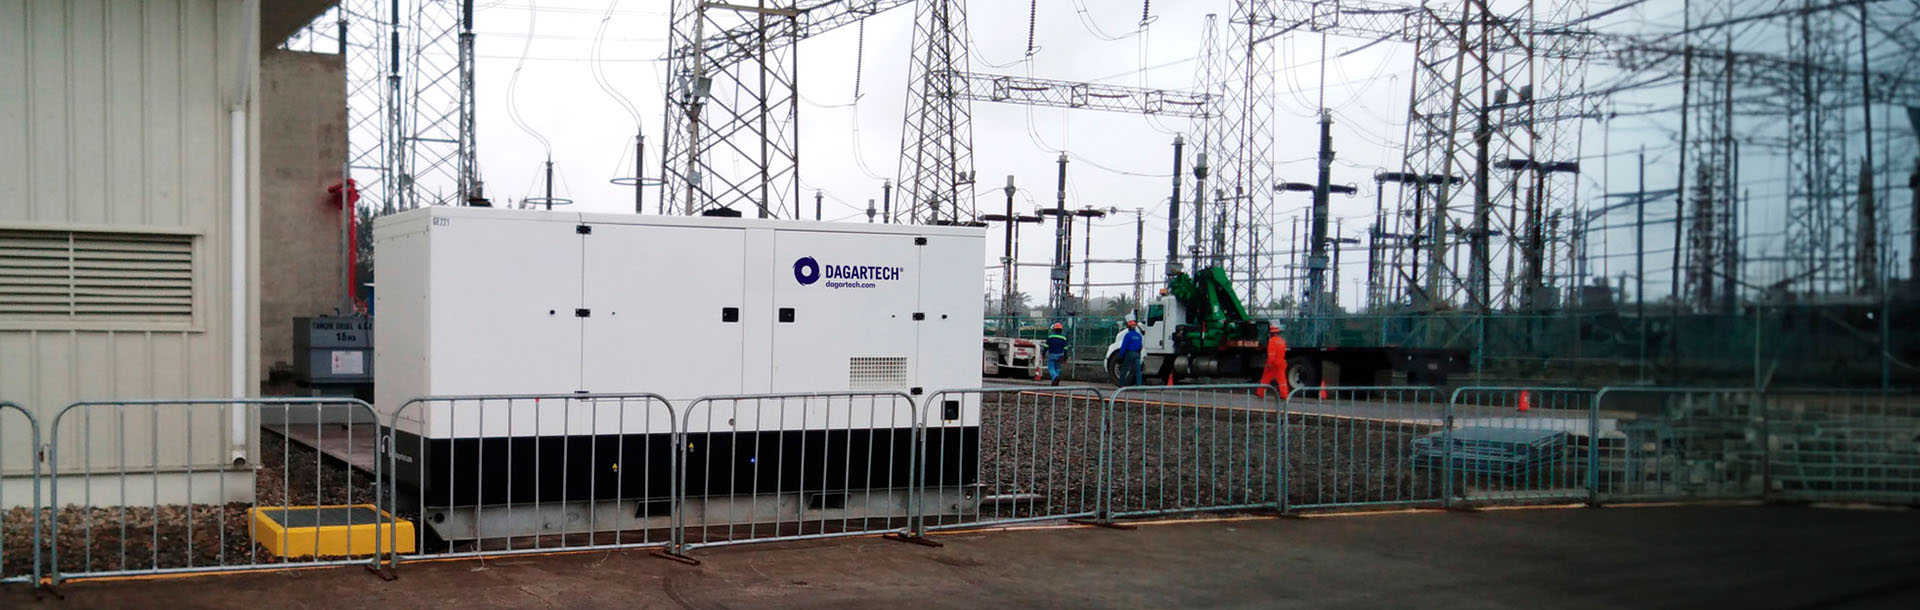 4800 kW de energia Dagartech asseguram os trabalhos de manutenção da Central Termoelétrica de Tuxpan, México